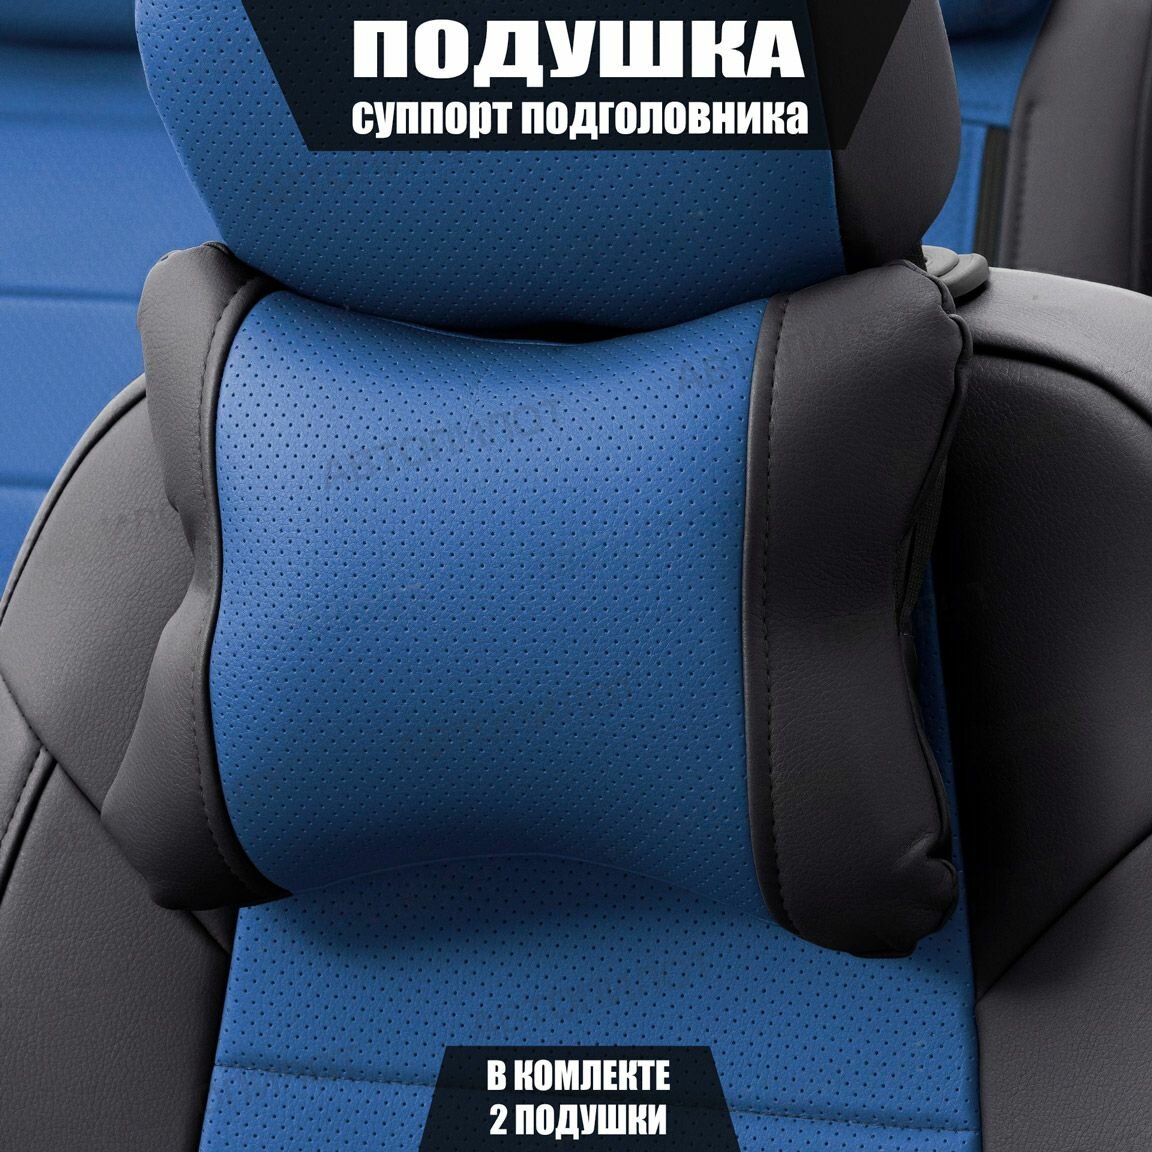 Подушки под шею (суппорт подголовника) для БМВ 1 серии (2007 - 2011) хэтчбек 5 дверей / BMW 1-series, Экокожа, 2 подушки, Черный и синий